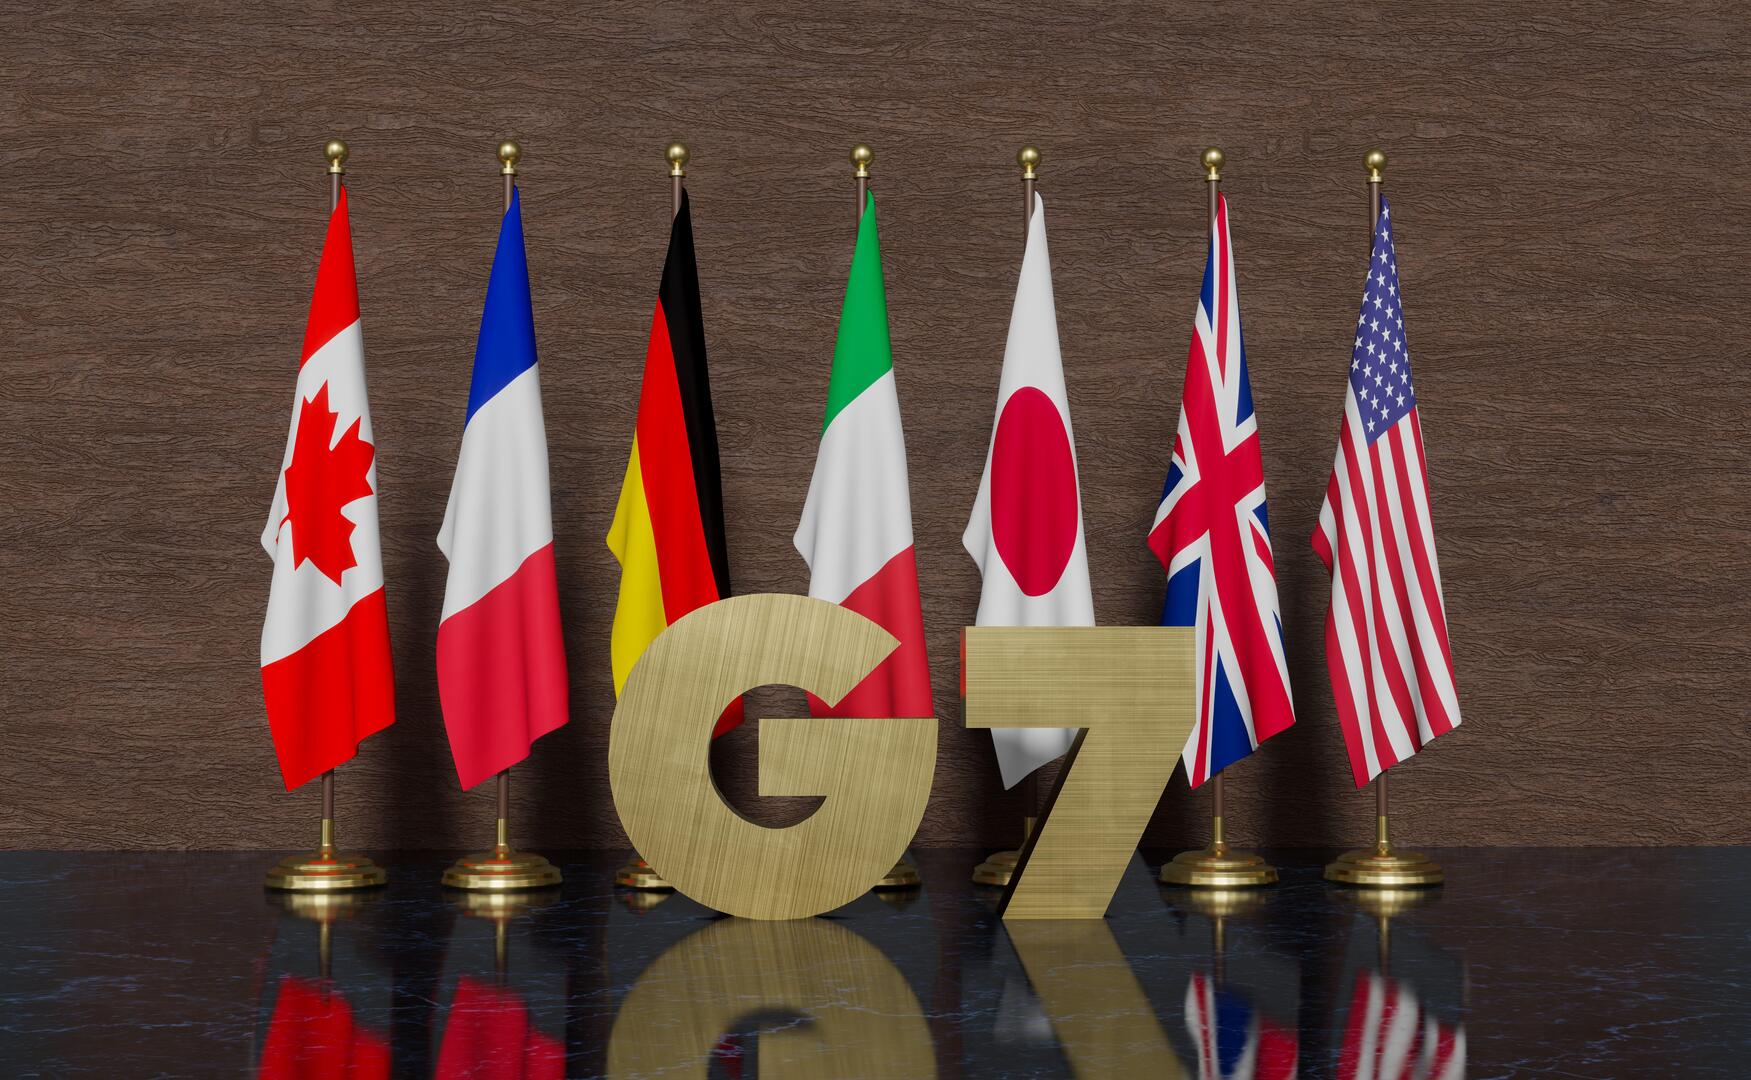 وكالة: الأصول الروسية في دول G7 ستبقى مجمدة حتى تقديم التعويضات لأوكرانيا